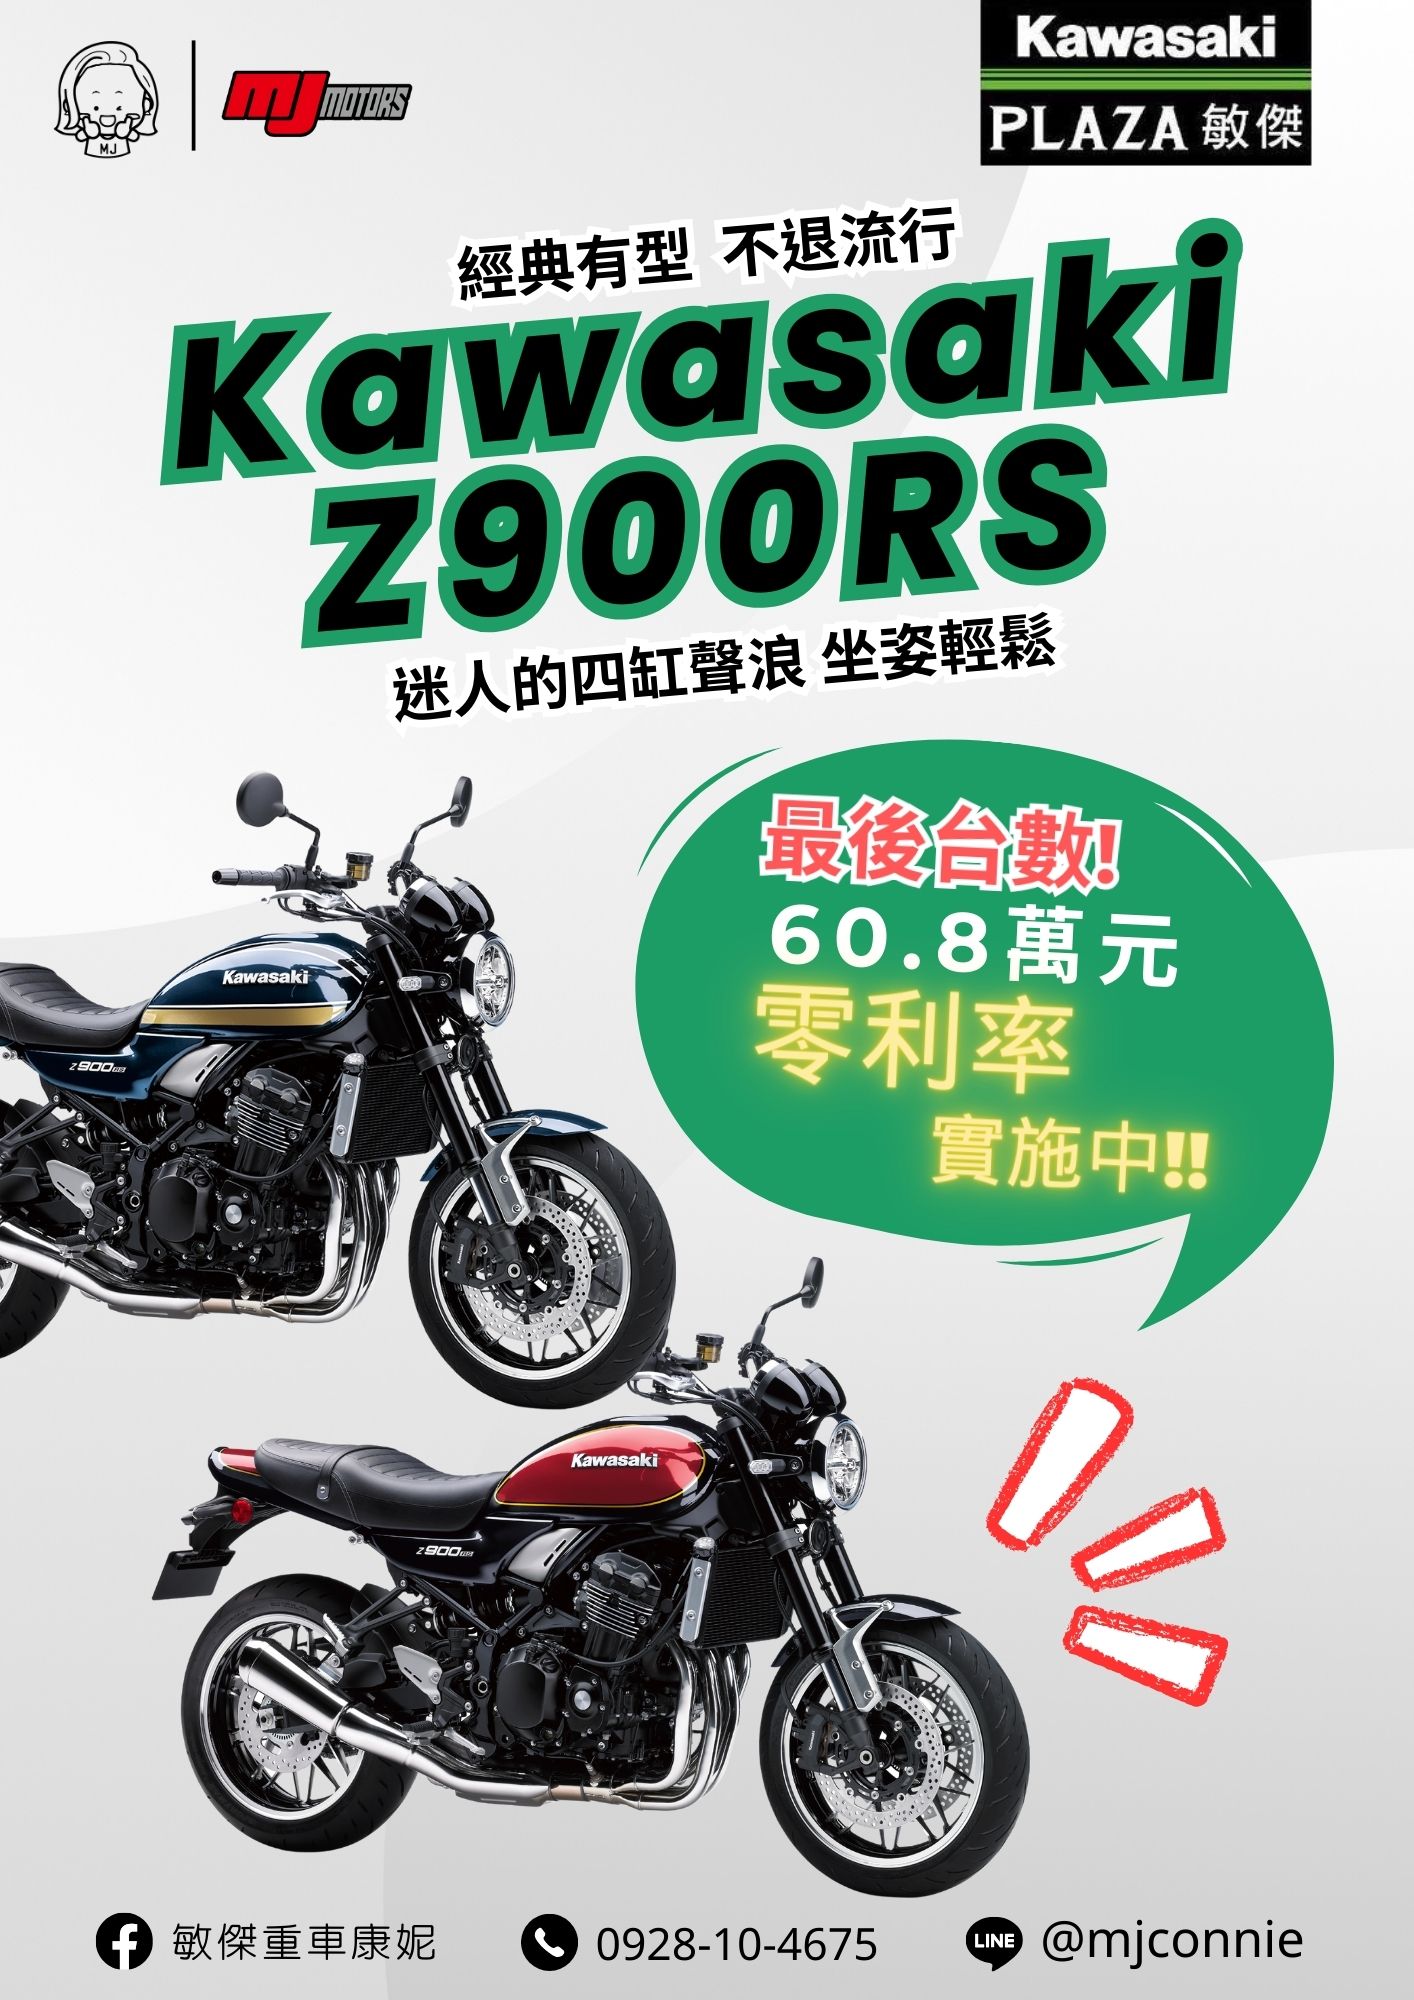 【敏傑車業資深銷售專員 康妮 Connie】KAWASAKI Z900RS - 「Webike-摩托車市」 『敏傑康妮』Kawasaki Z900RS 典復古四缸車款~非Z900RS莫屬 !! 免頭款 免利息就把車騎回家^^